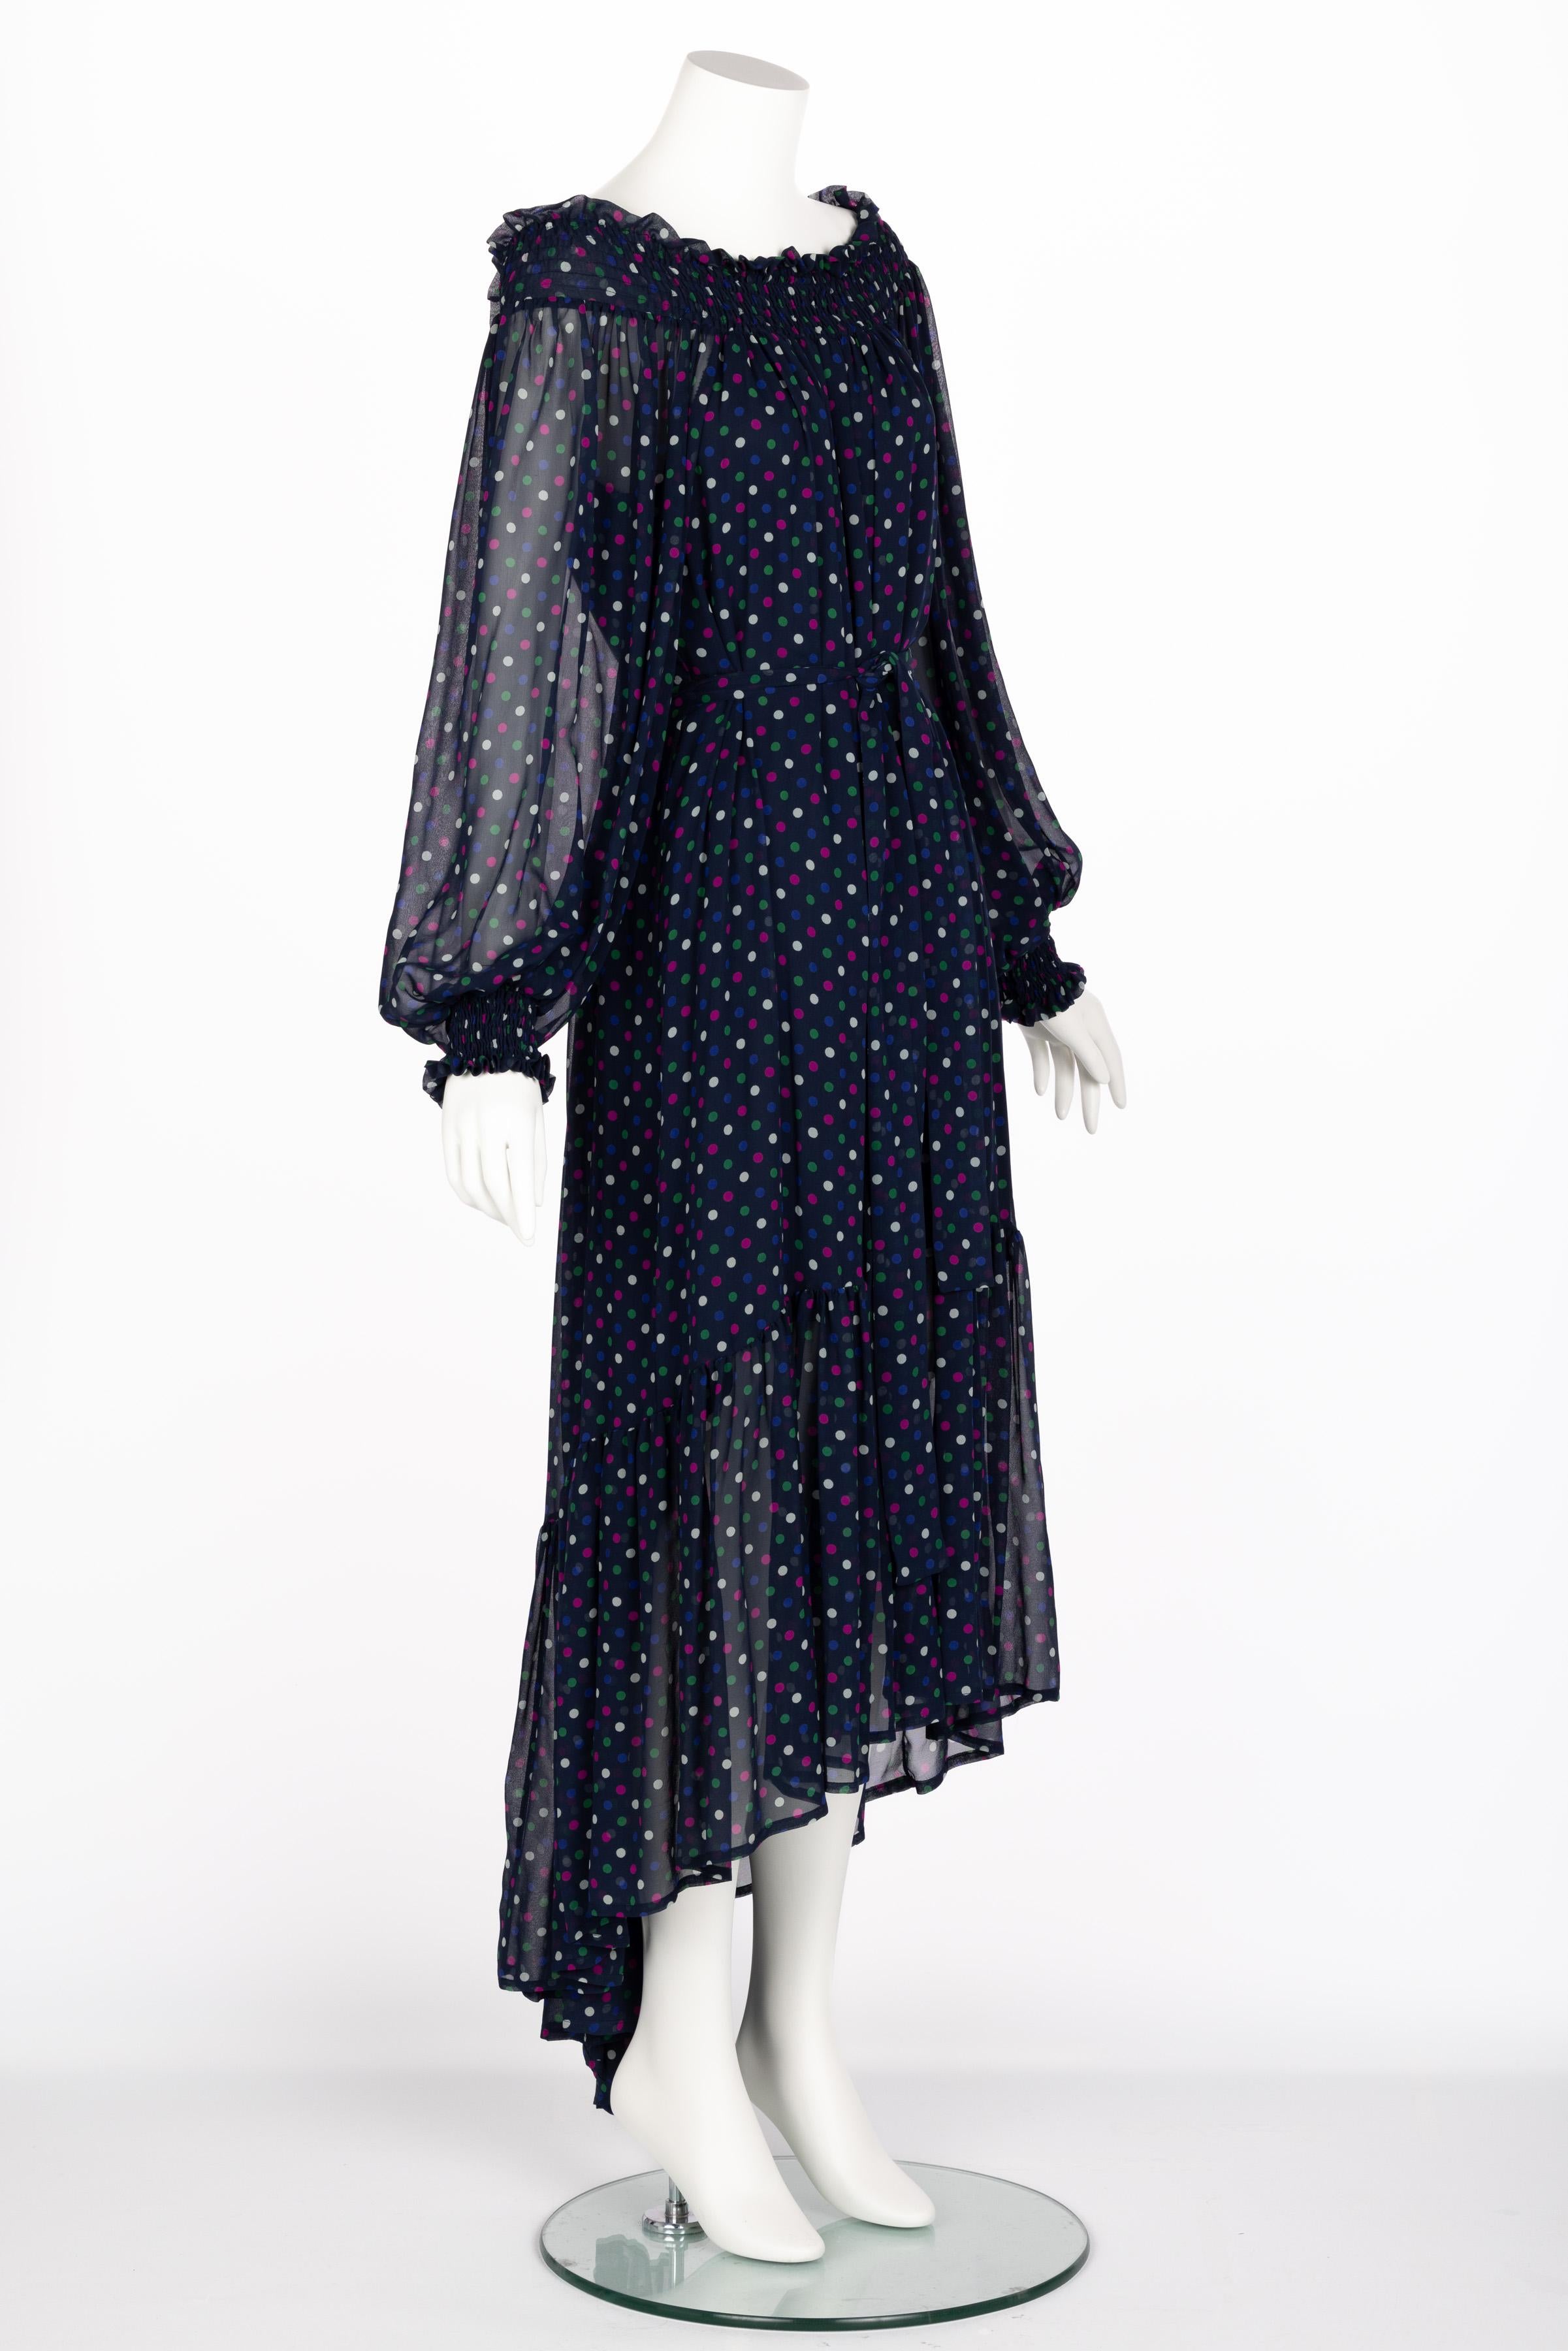 Saint Laurent Blue Polka Dot Off Shoulder Silk Dress YSL 1970s For Sale 6